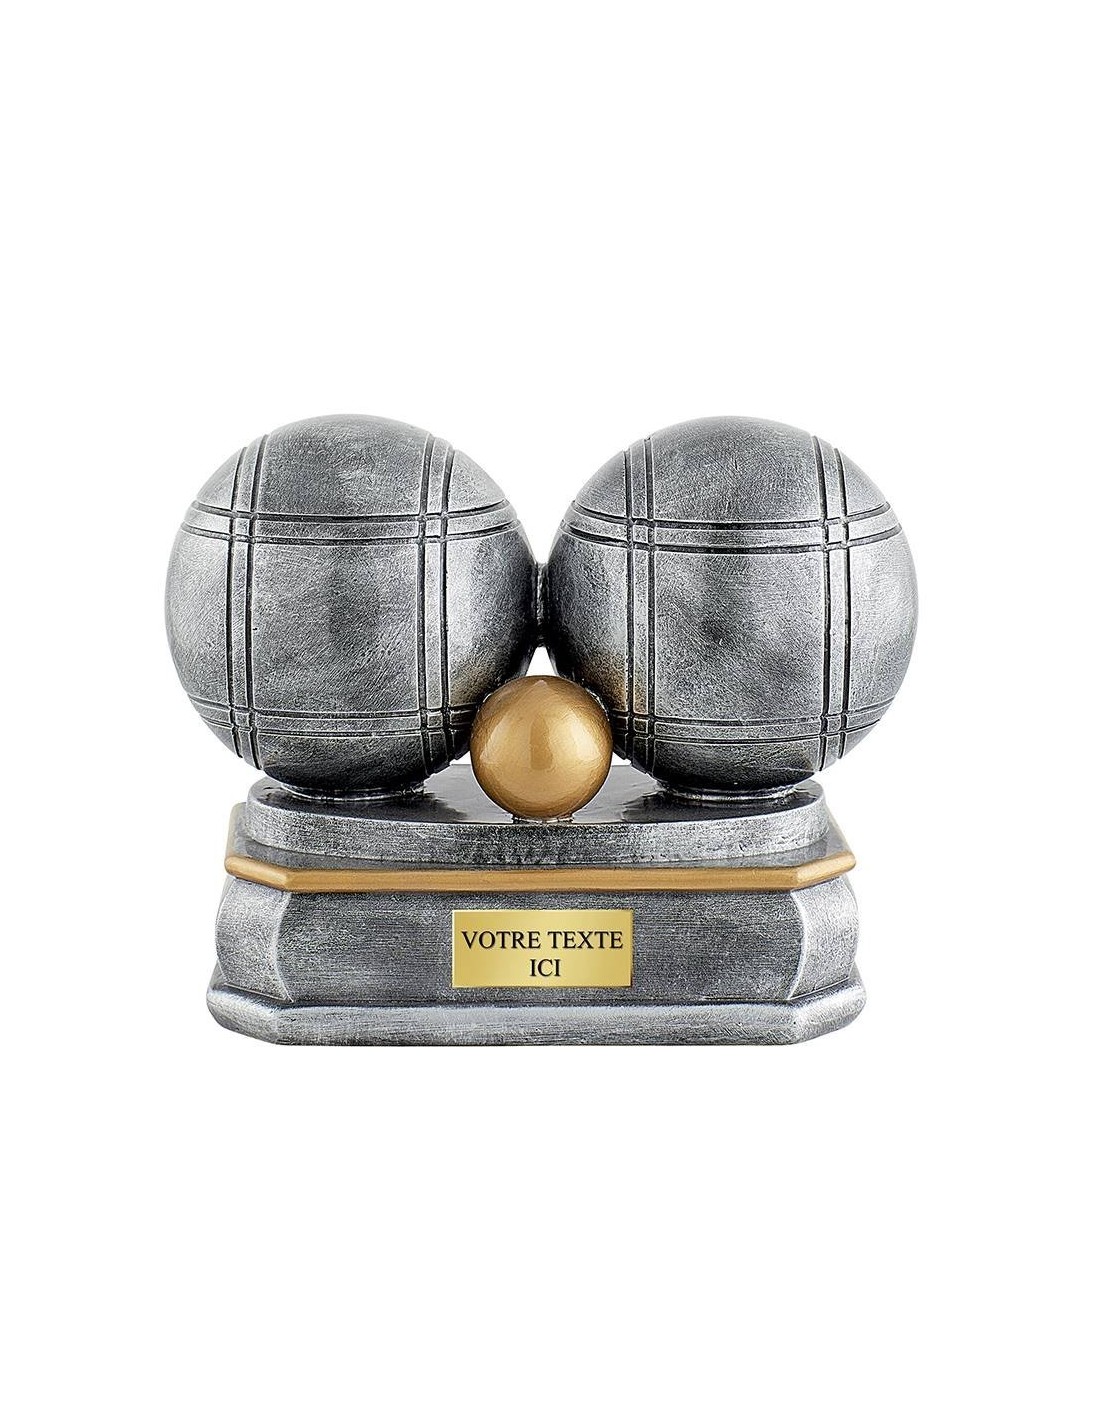 Achetez La Récompense Parfaite : Trophée Ballon - Rs0041b